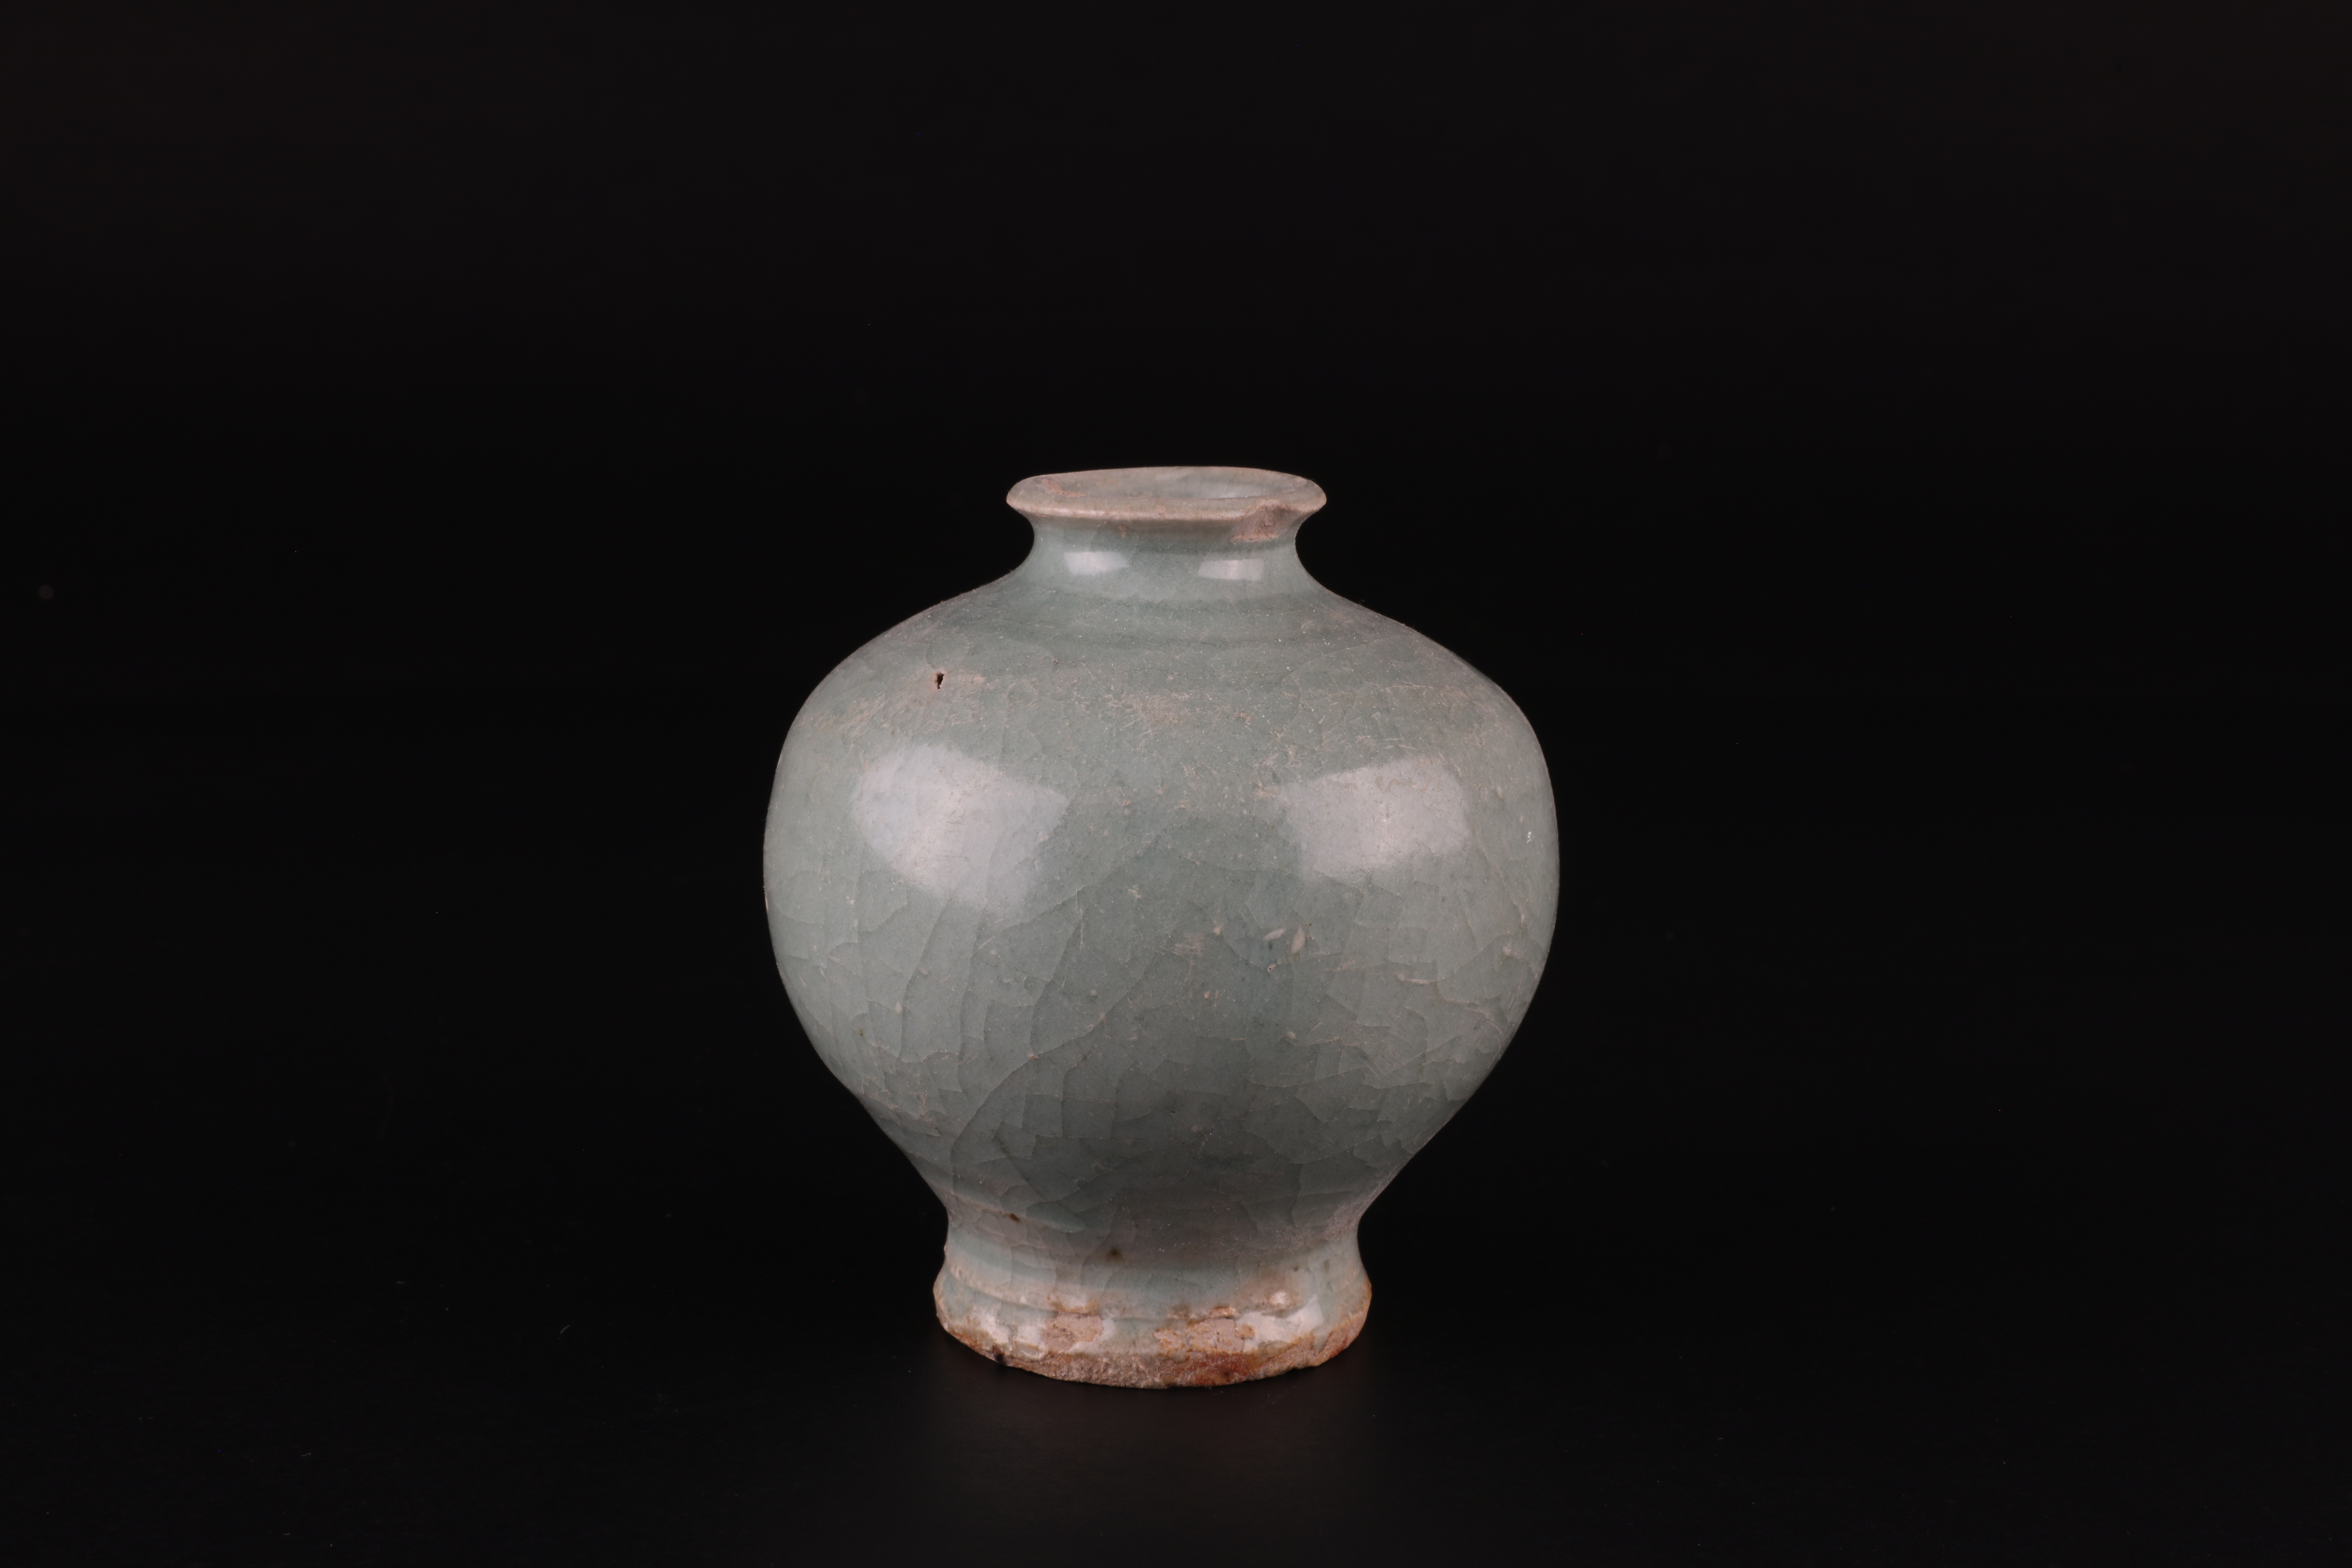 下邳故城遗址上发现的青瓷瓶。 下邳故城遗址考古队 供图